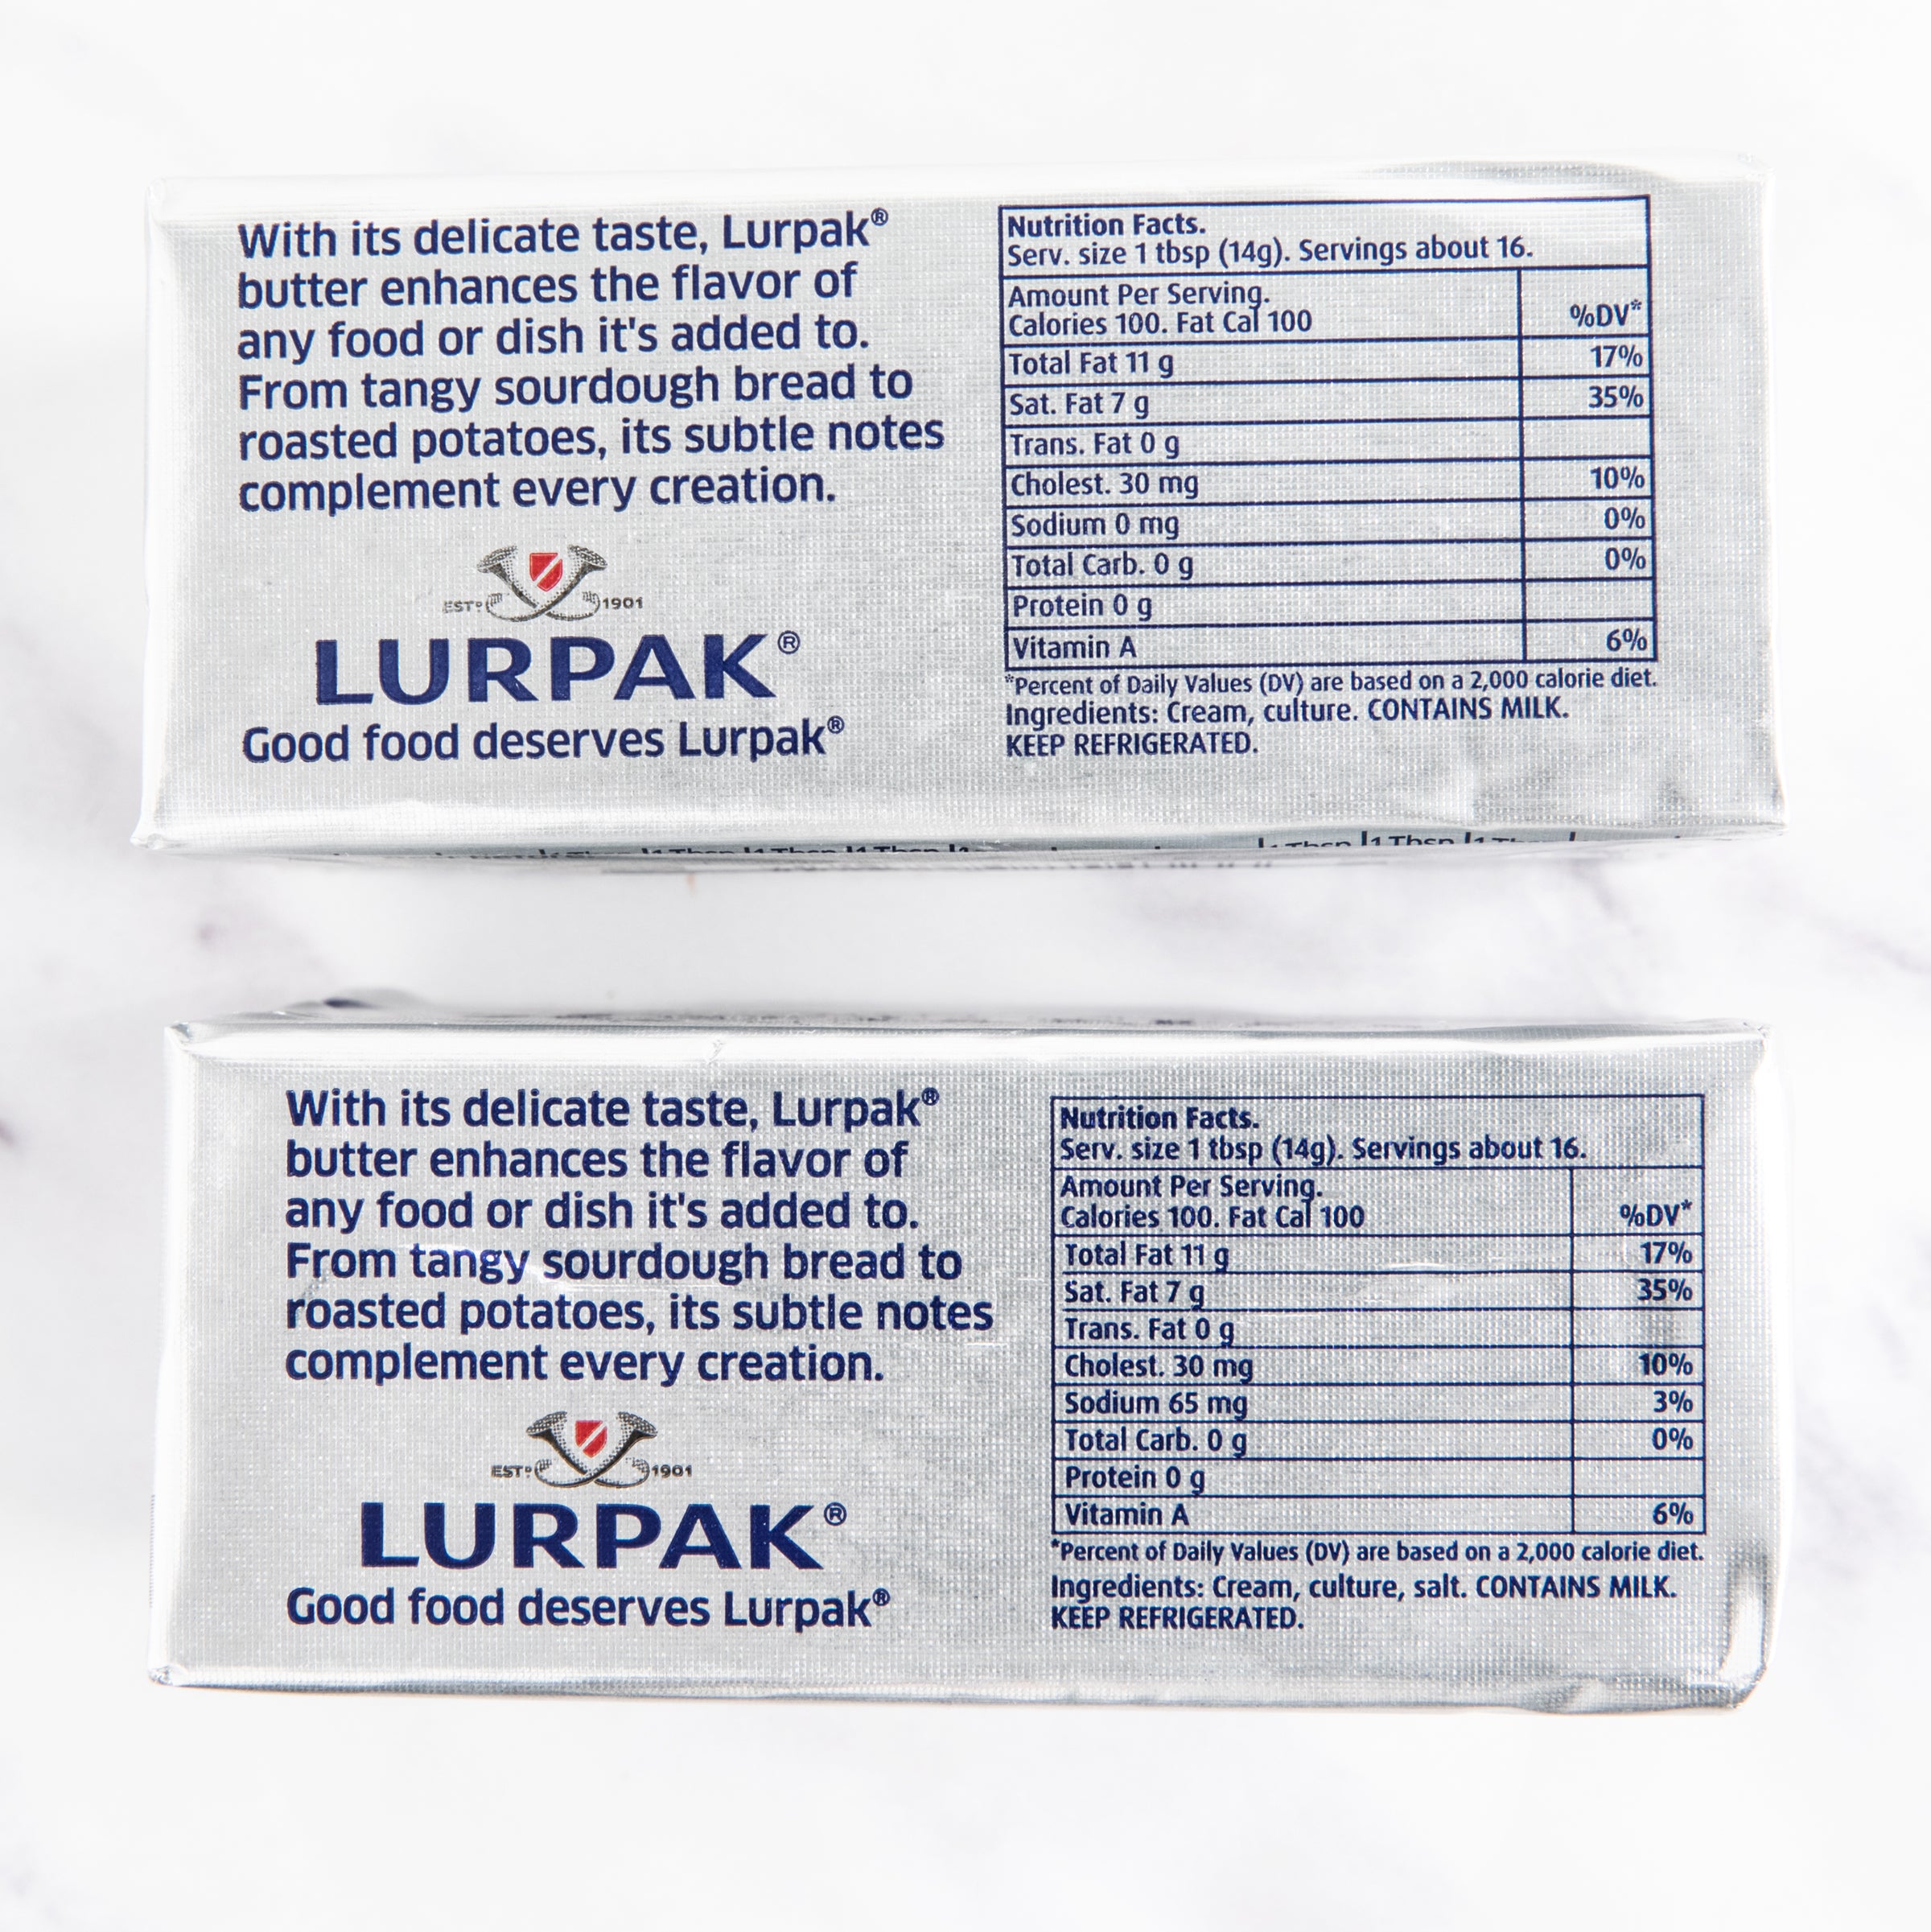 Lurpak butter prices